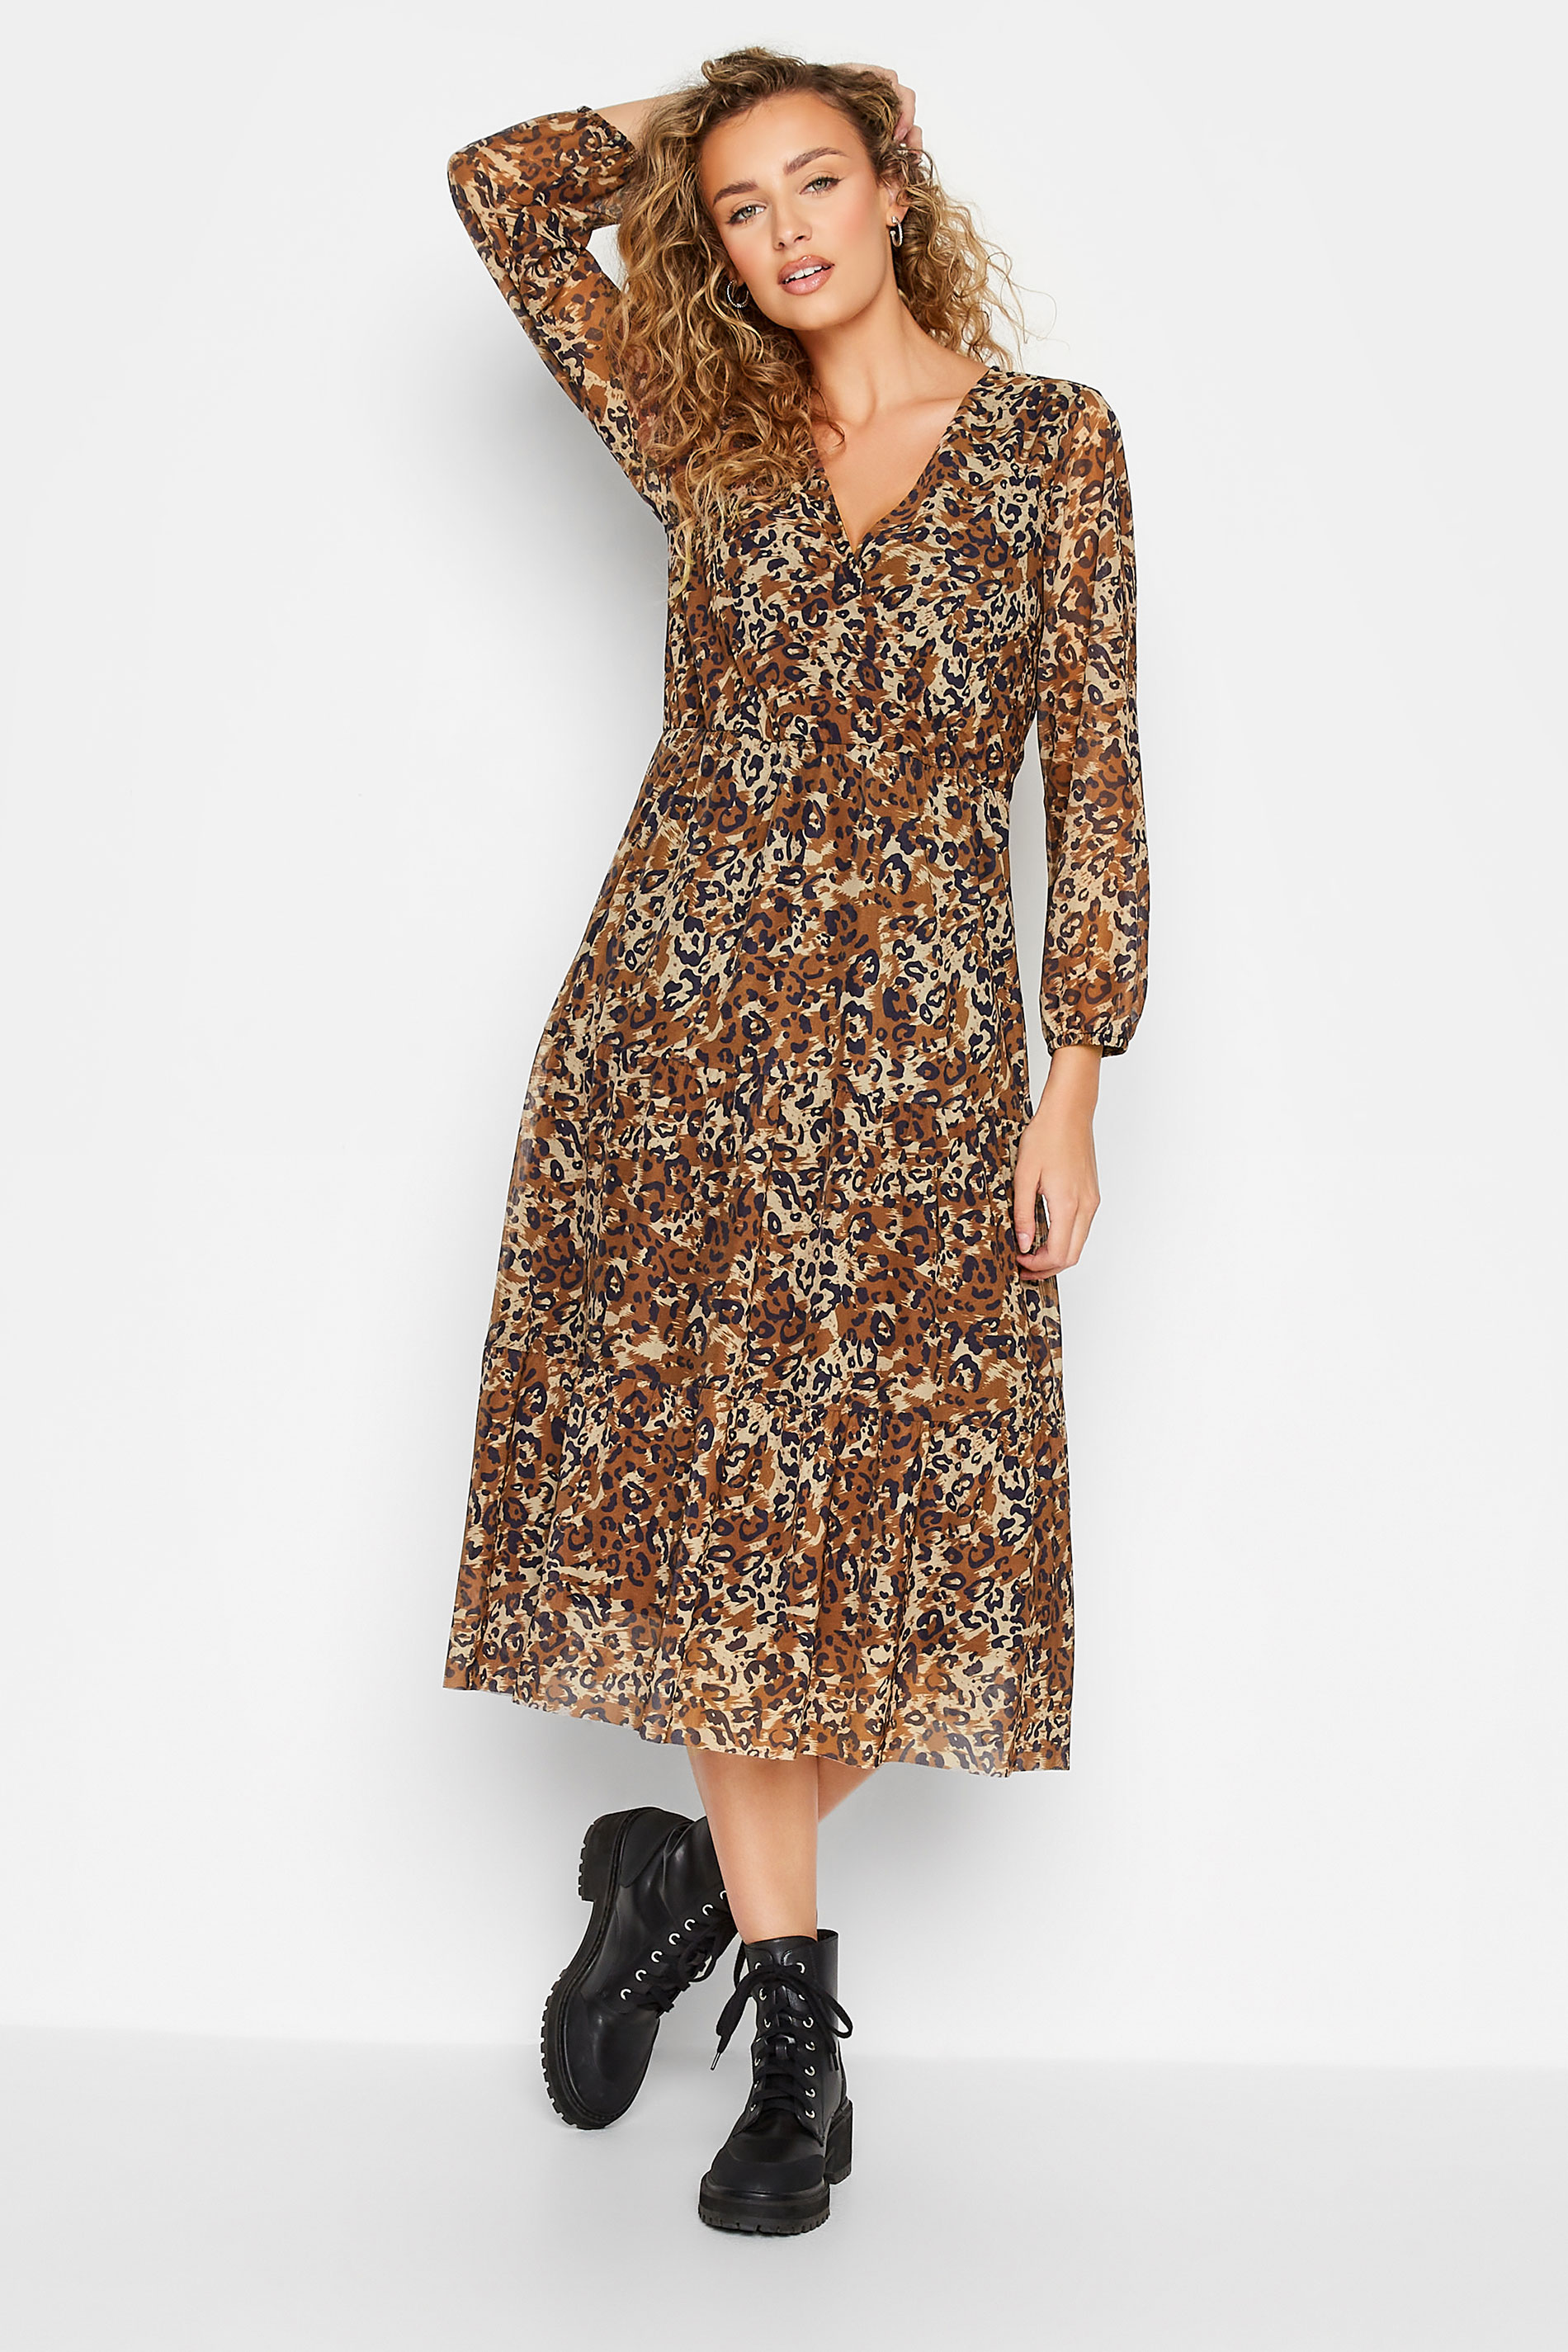 LTS Tall Women's Brown Leopard Print Mesh Dress | Long Tall Sally 1